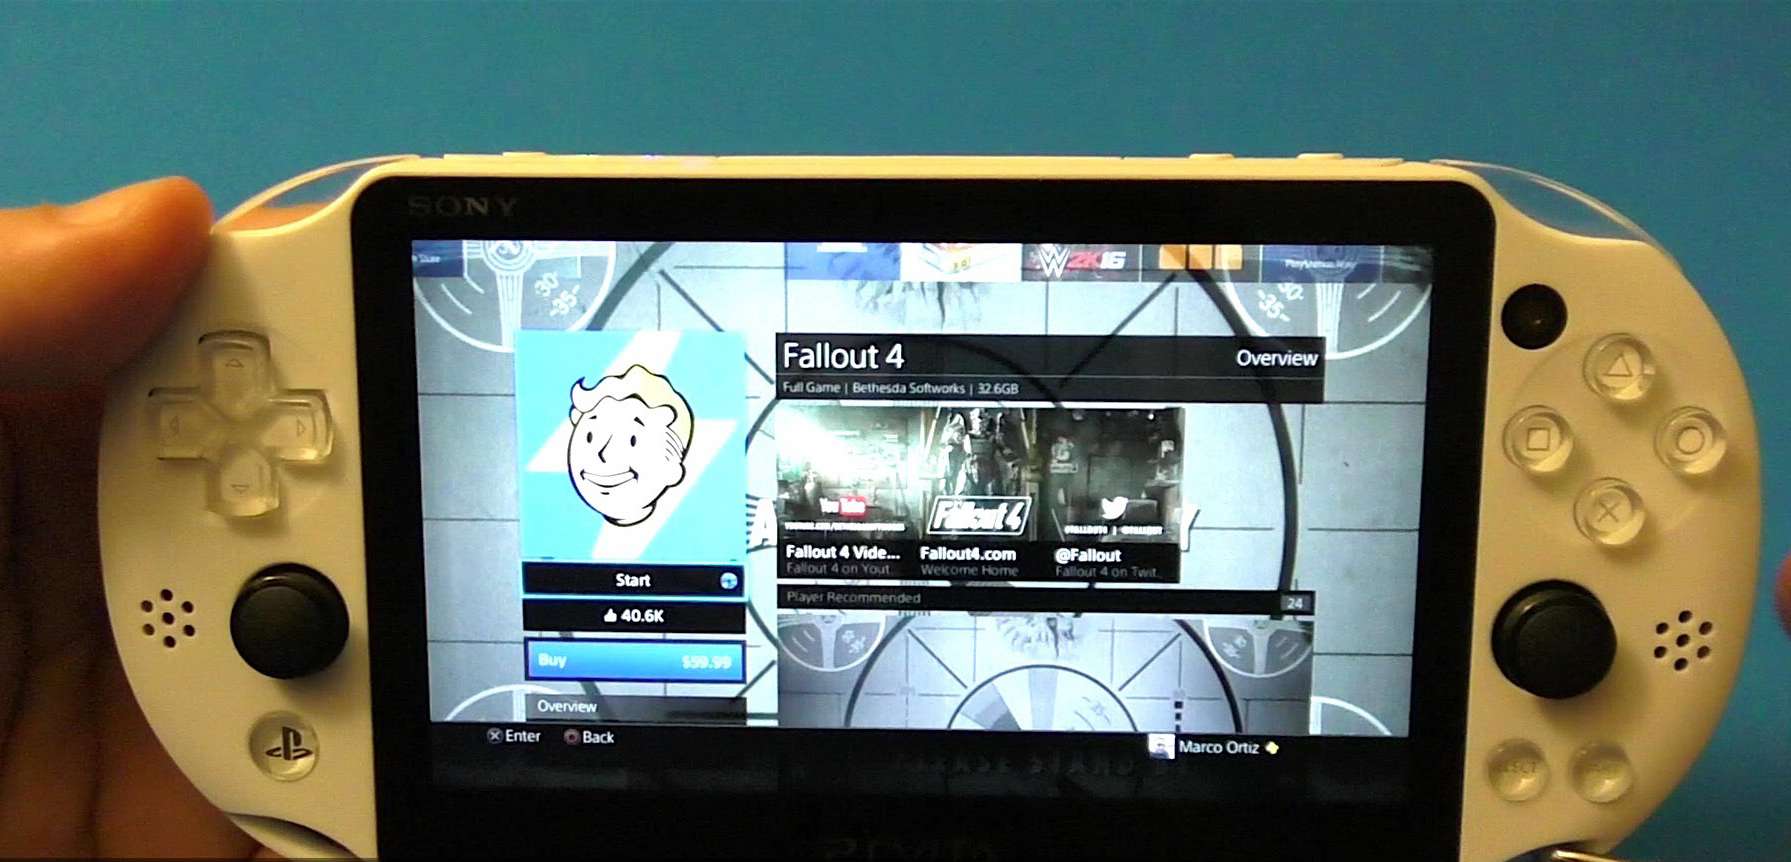 Remote Play dla PS Vita w komicznej reklamie. Sony przypomniało sobie o handheldzie